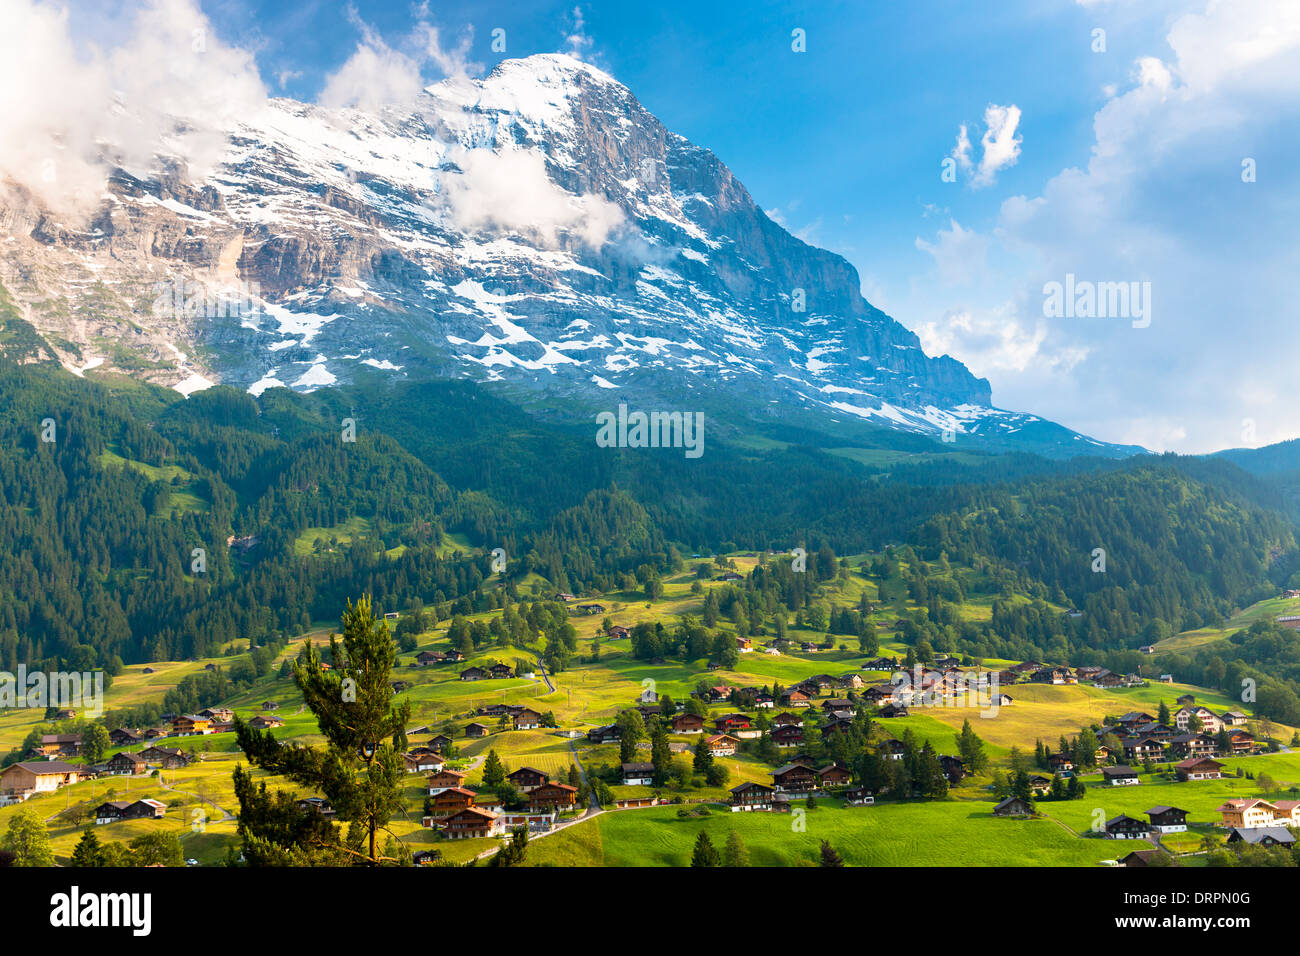 La città di Grindelwald, sotto la montagna dell'Eiger, si trova a nord sotto il cielo ceruleo delle Alpi svizzere nell'Oberland bernese, in Svizzera Foto Stock